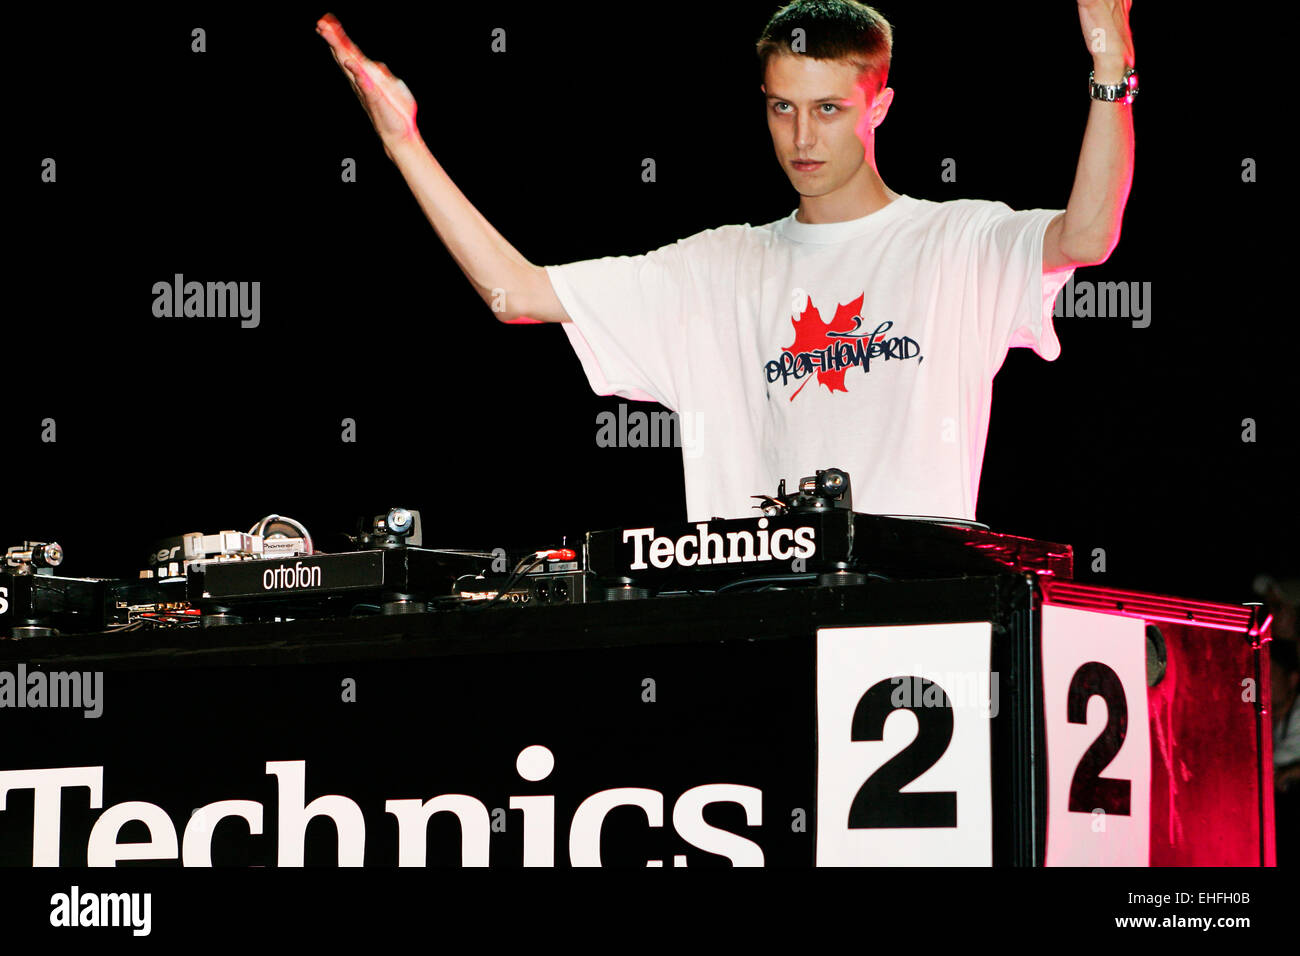 Drastik dal Canada DJing nella battaglia per la supremazia mondiale presso la DMC/Technics DJ World Championships a Hammersmith Apollo. Foto Stock